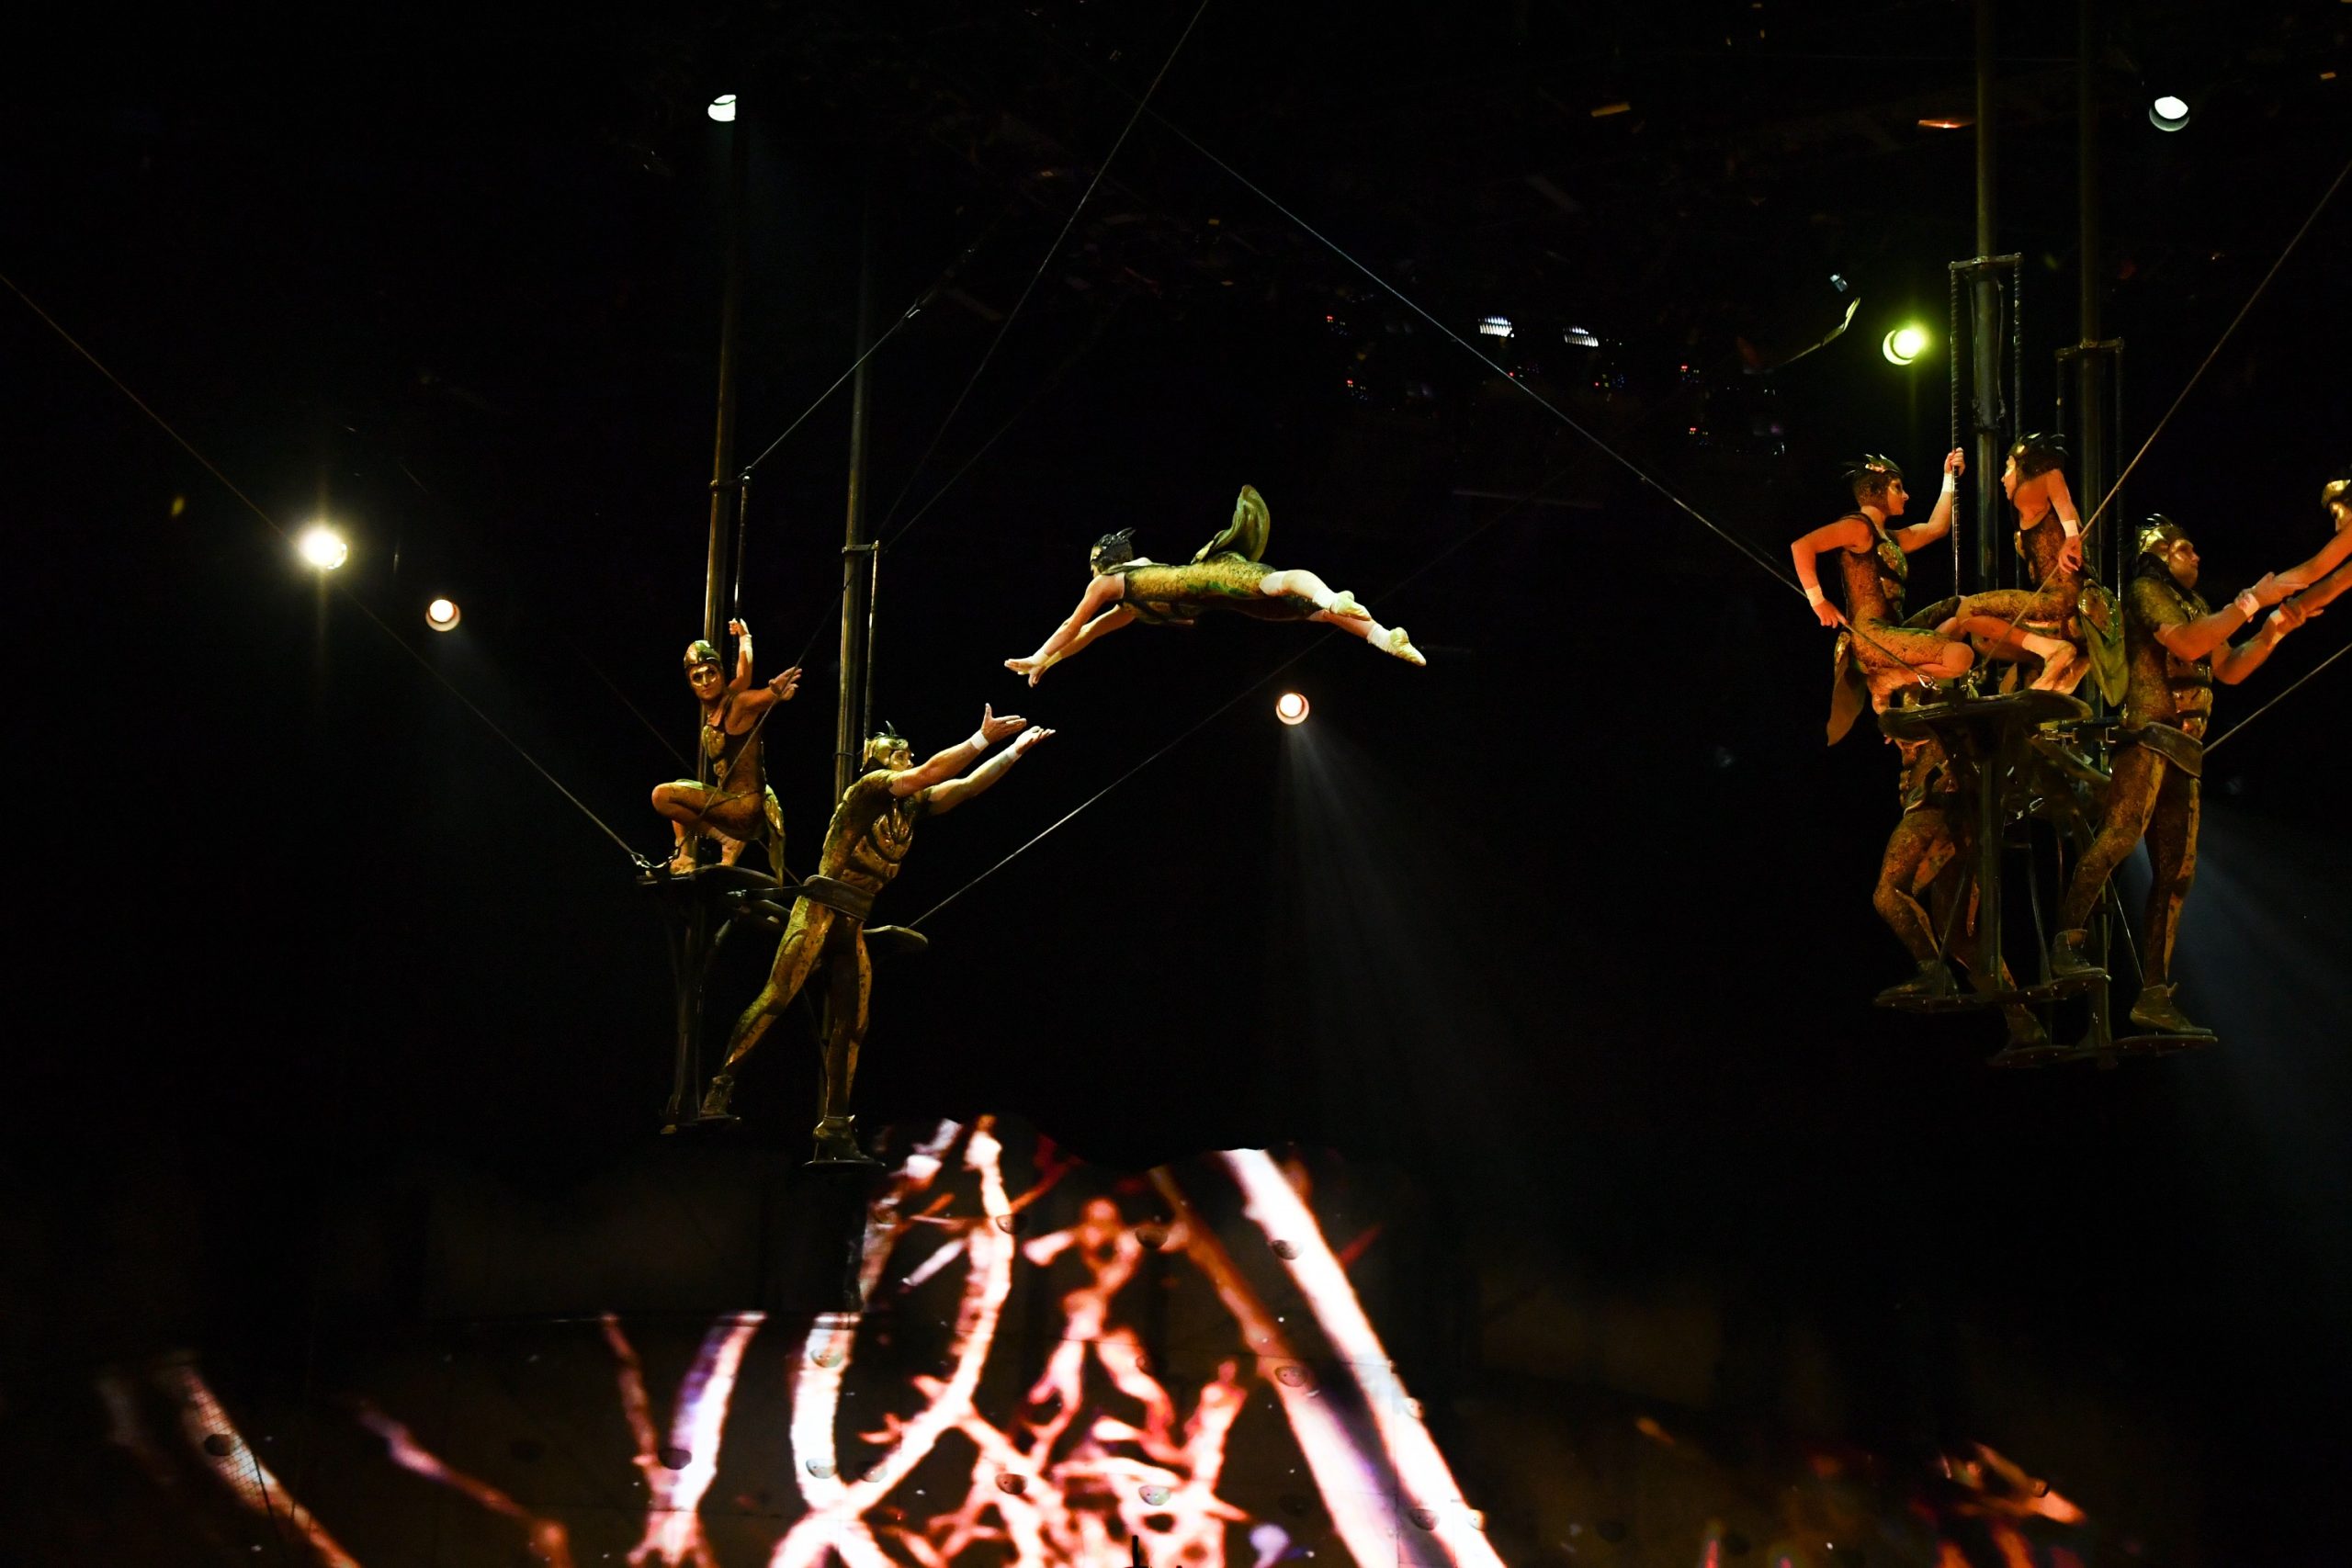 Magyar artistapárral érkezik Budapestre a Cirque du Soleil